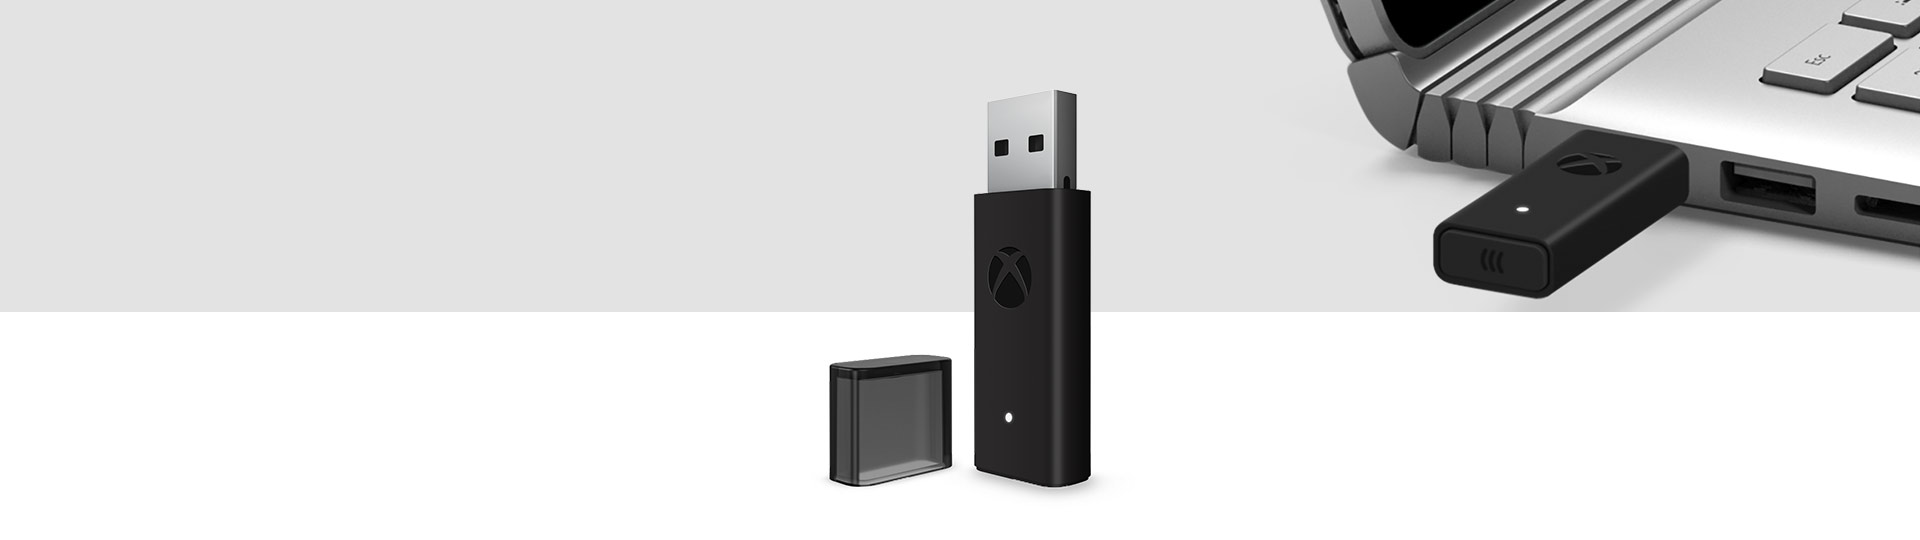 Trådløs Xbox-controller Adapter til Windows 10 med Trådløs Xbox-adapter sat i en USB-port på en laptop i baggrunden